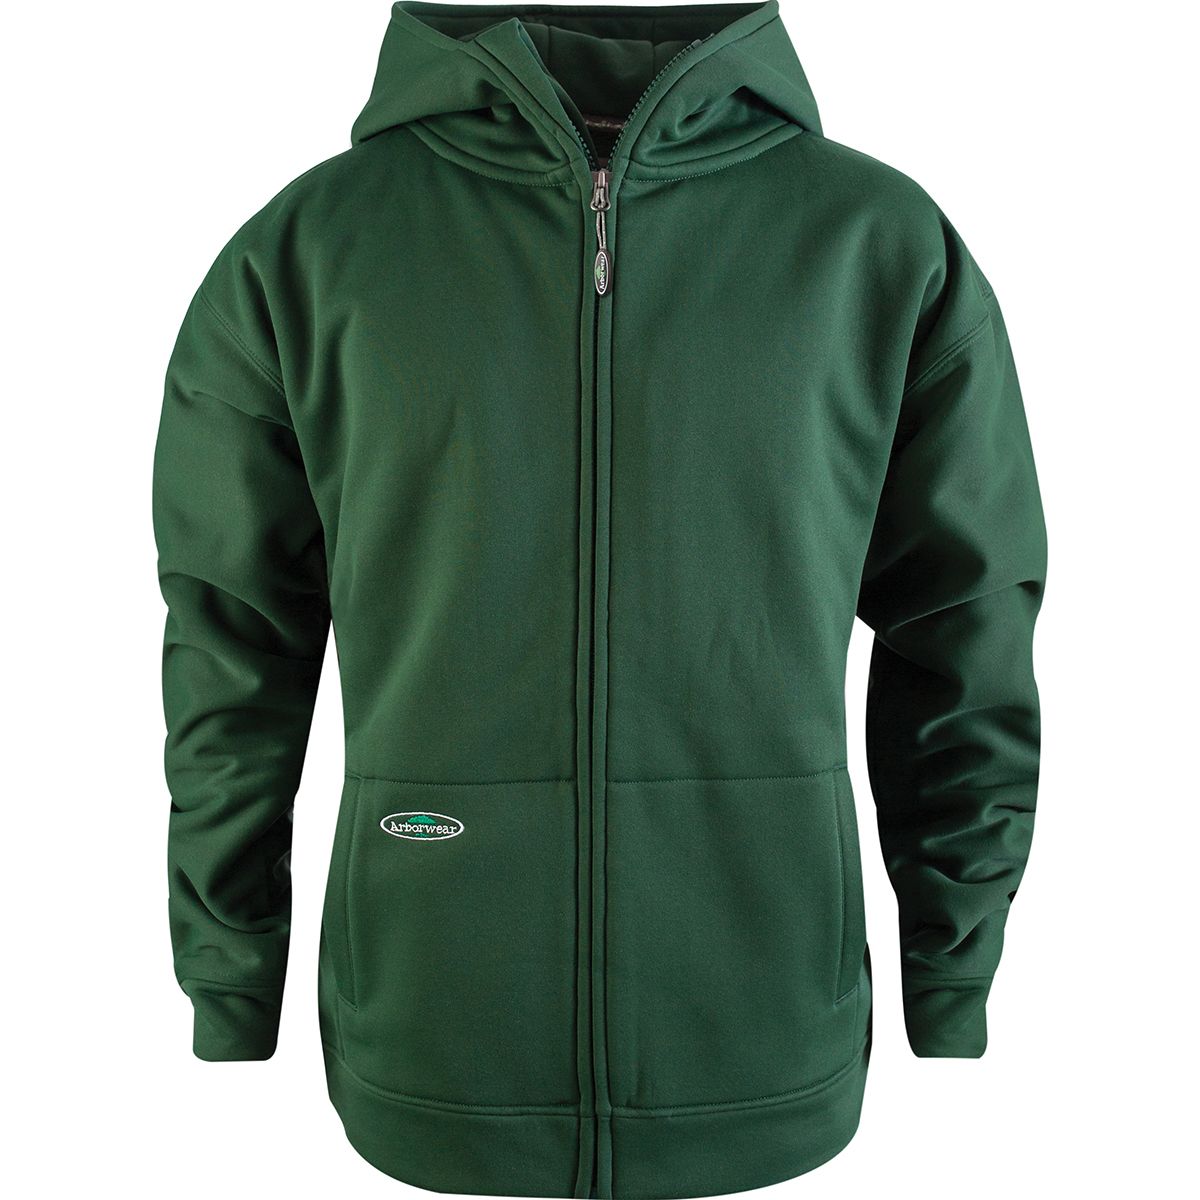 Arborwear Tech Double Thick Full-Zip Sweatshirt - Men's | eBay